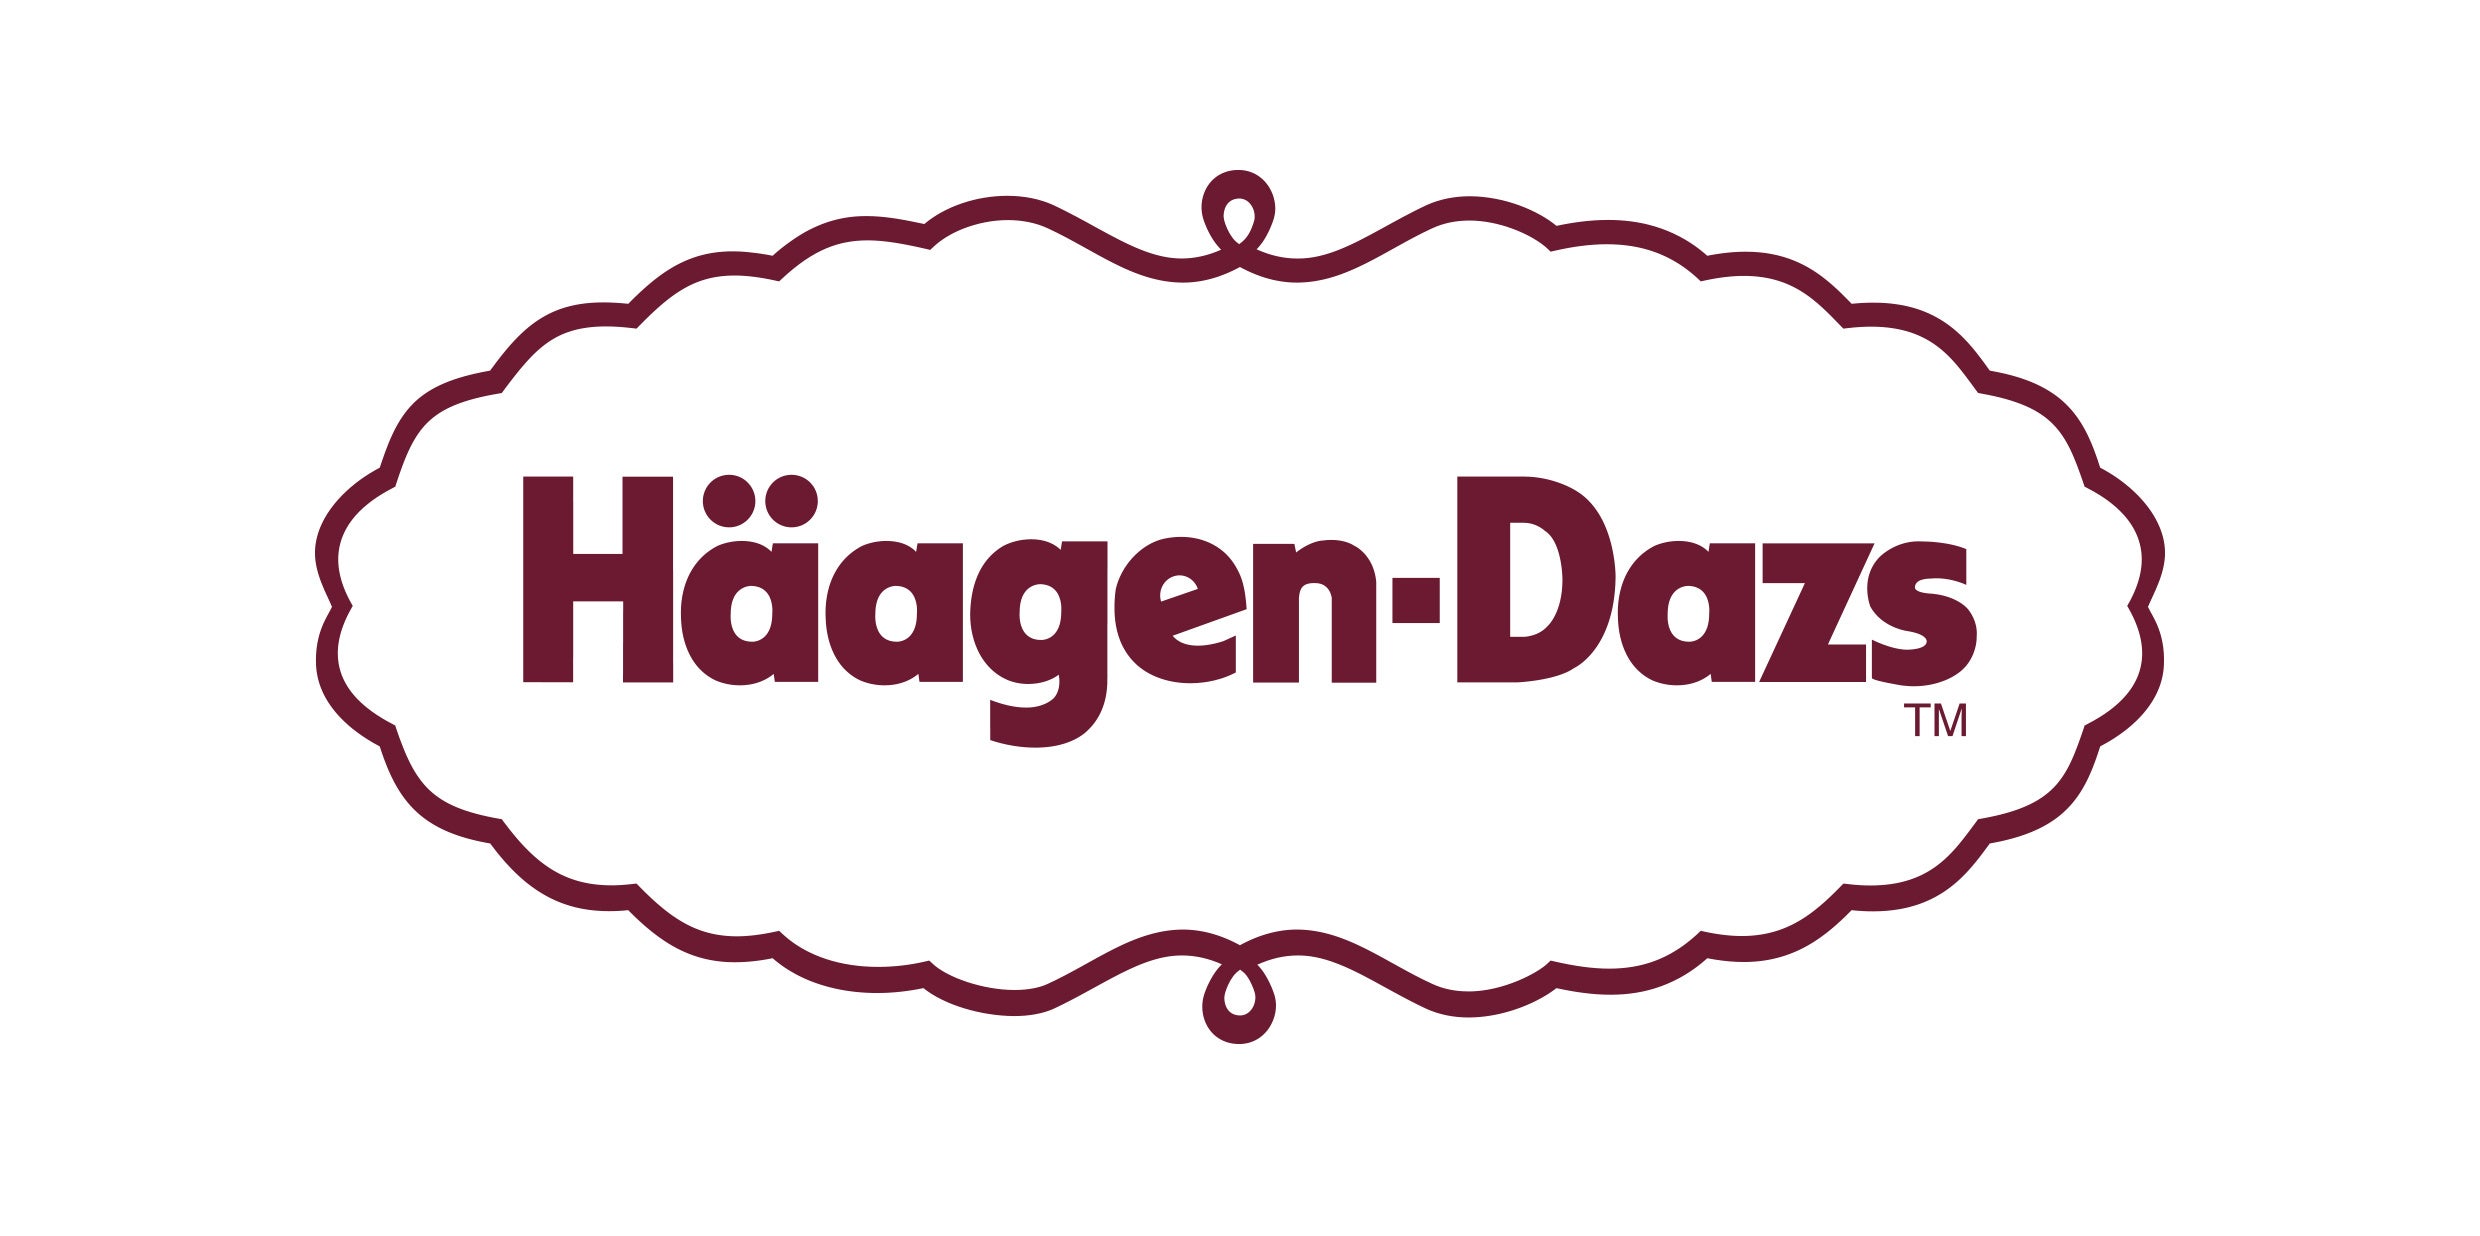 zCgf[V[YI@ND]ɂNIWij[oI@uREDLOBSTER meets Haagen-Dazsv